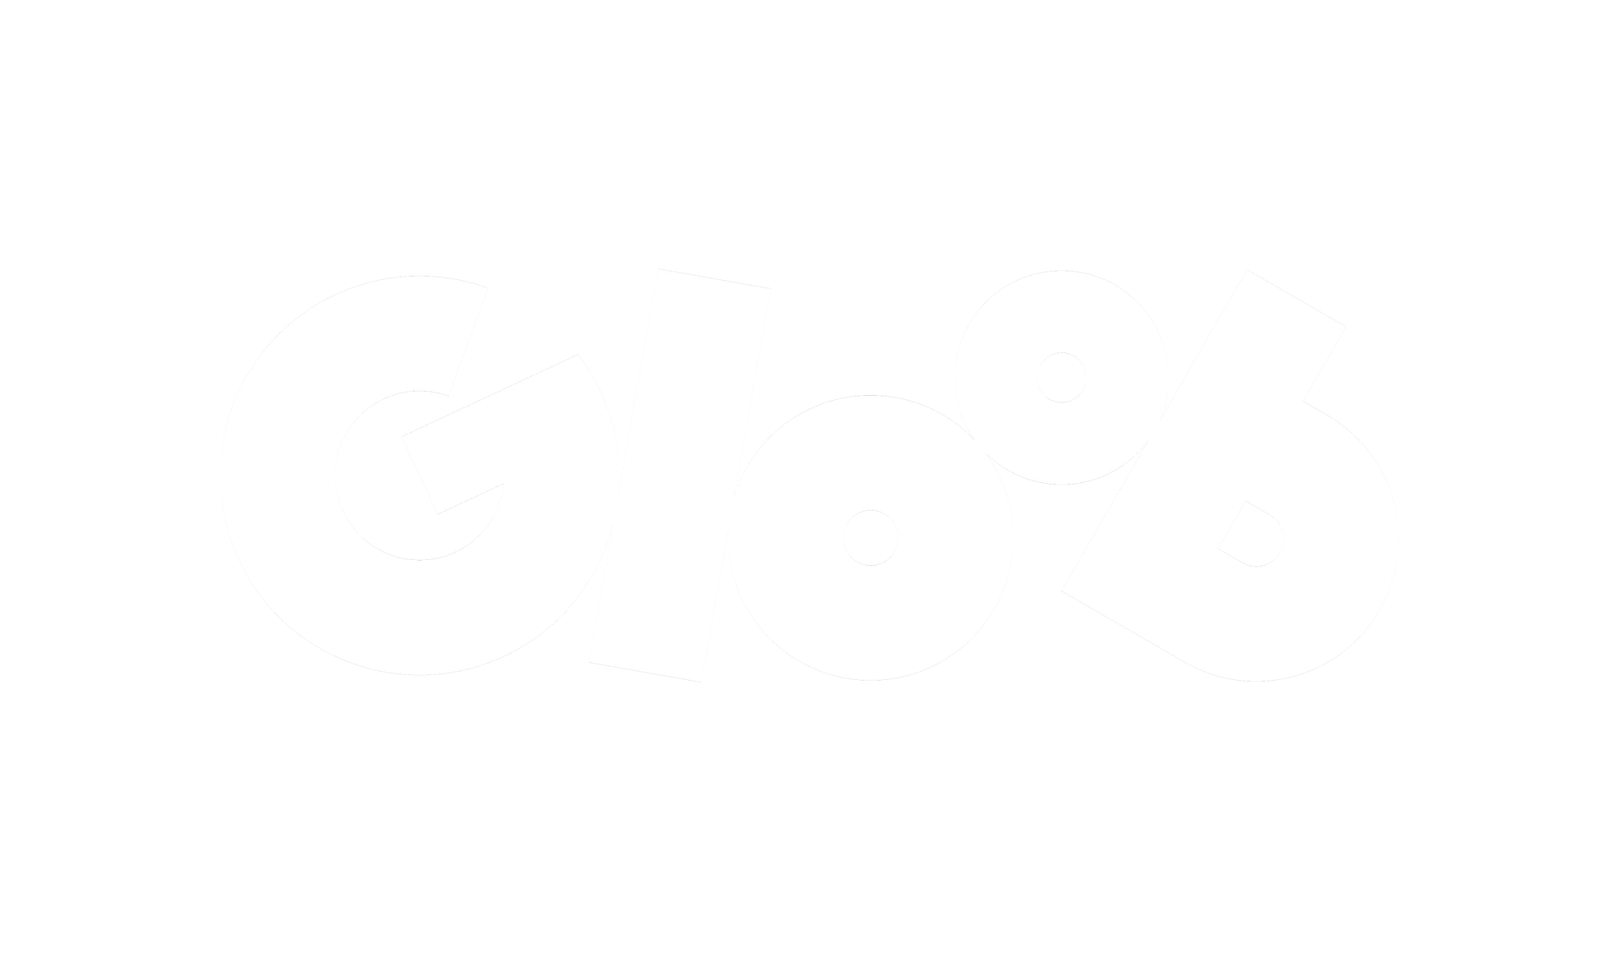 gloob_fundo_escuro